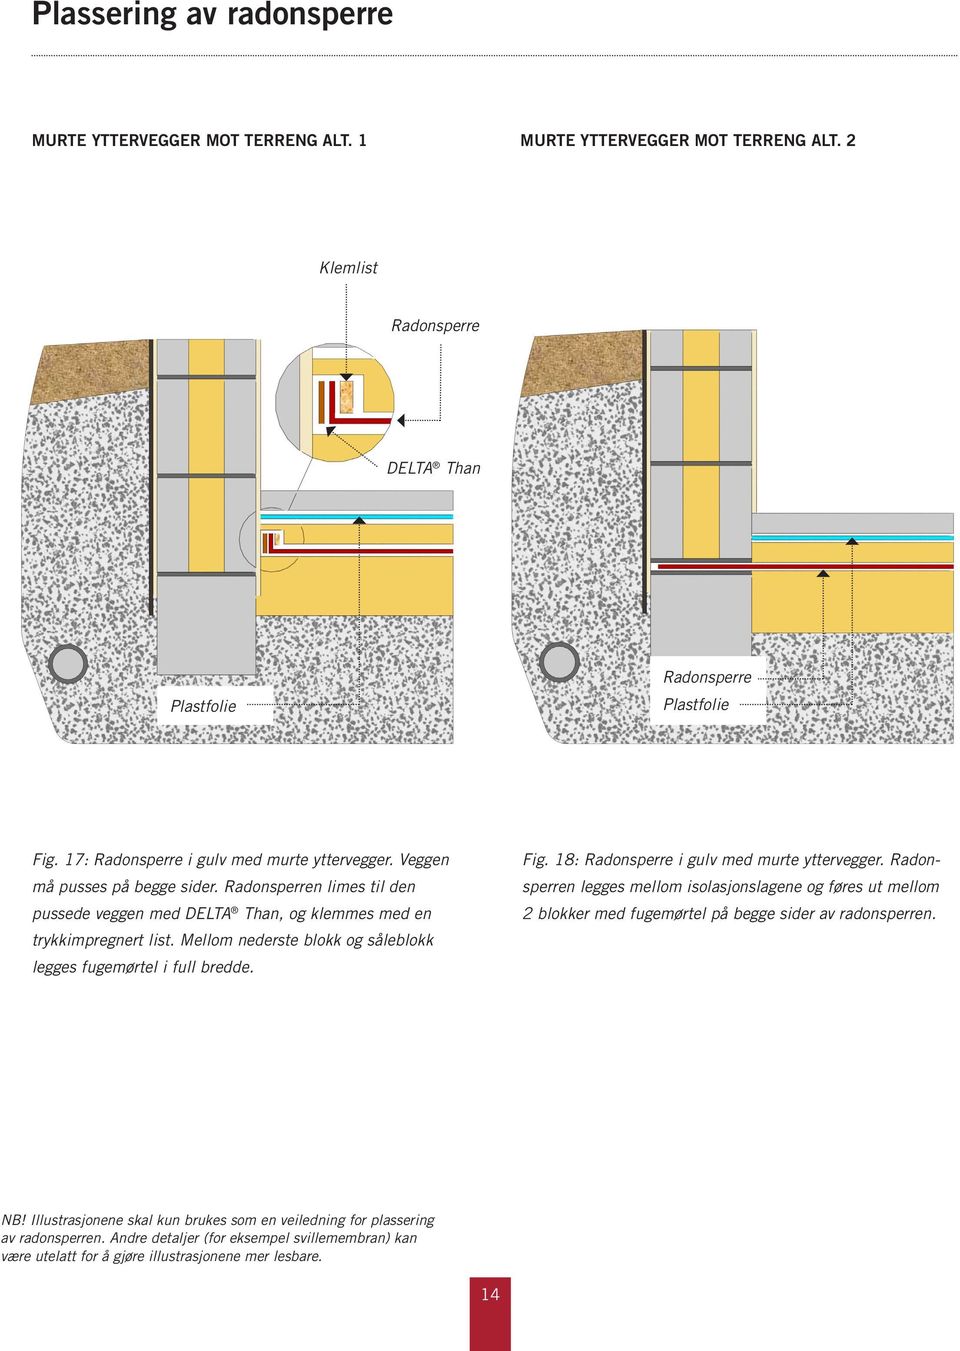 Mellom nederste blokk og såleblokk legges fugemørtel i full bredde. Fig. 18: Radonsperre i gulv med murte yttervegger.